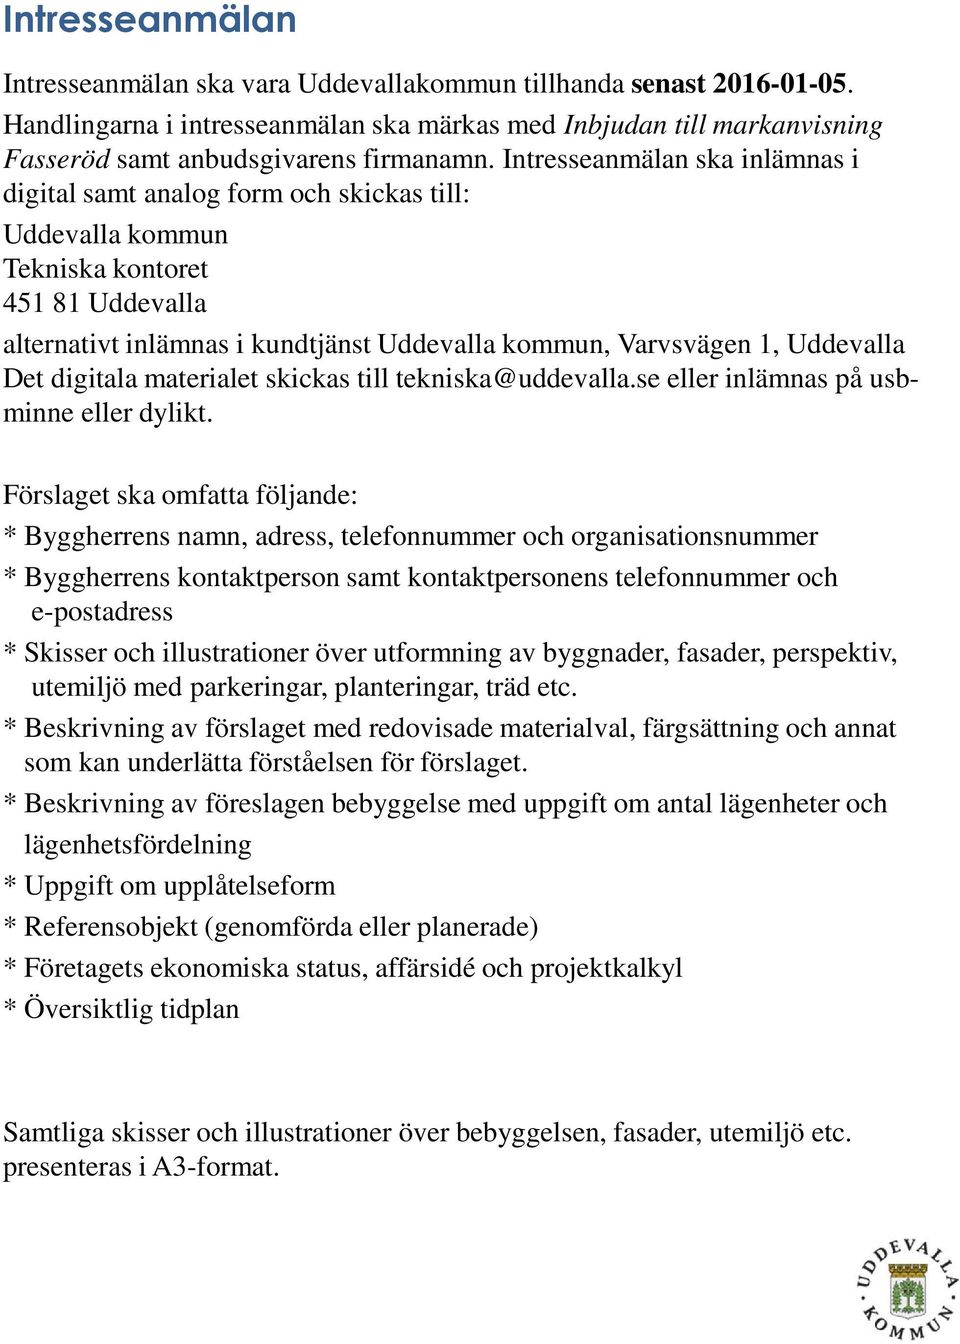 Uddevalla Det digitala materialet skickas till tekniska@uddevalla.se eller inlämnas på usbminne eller dylikt.